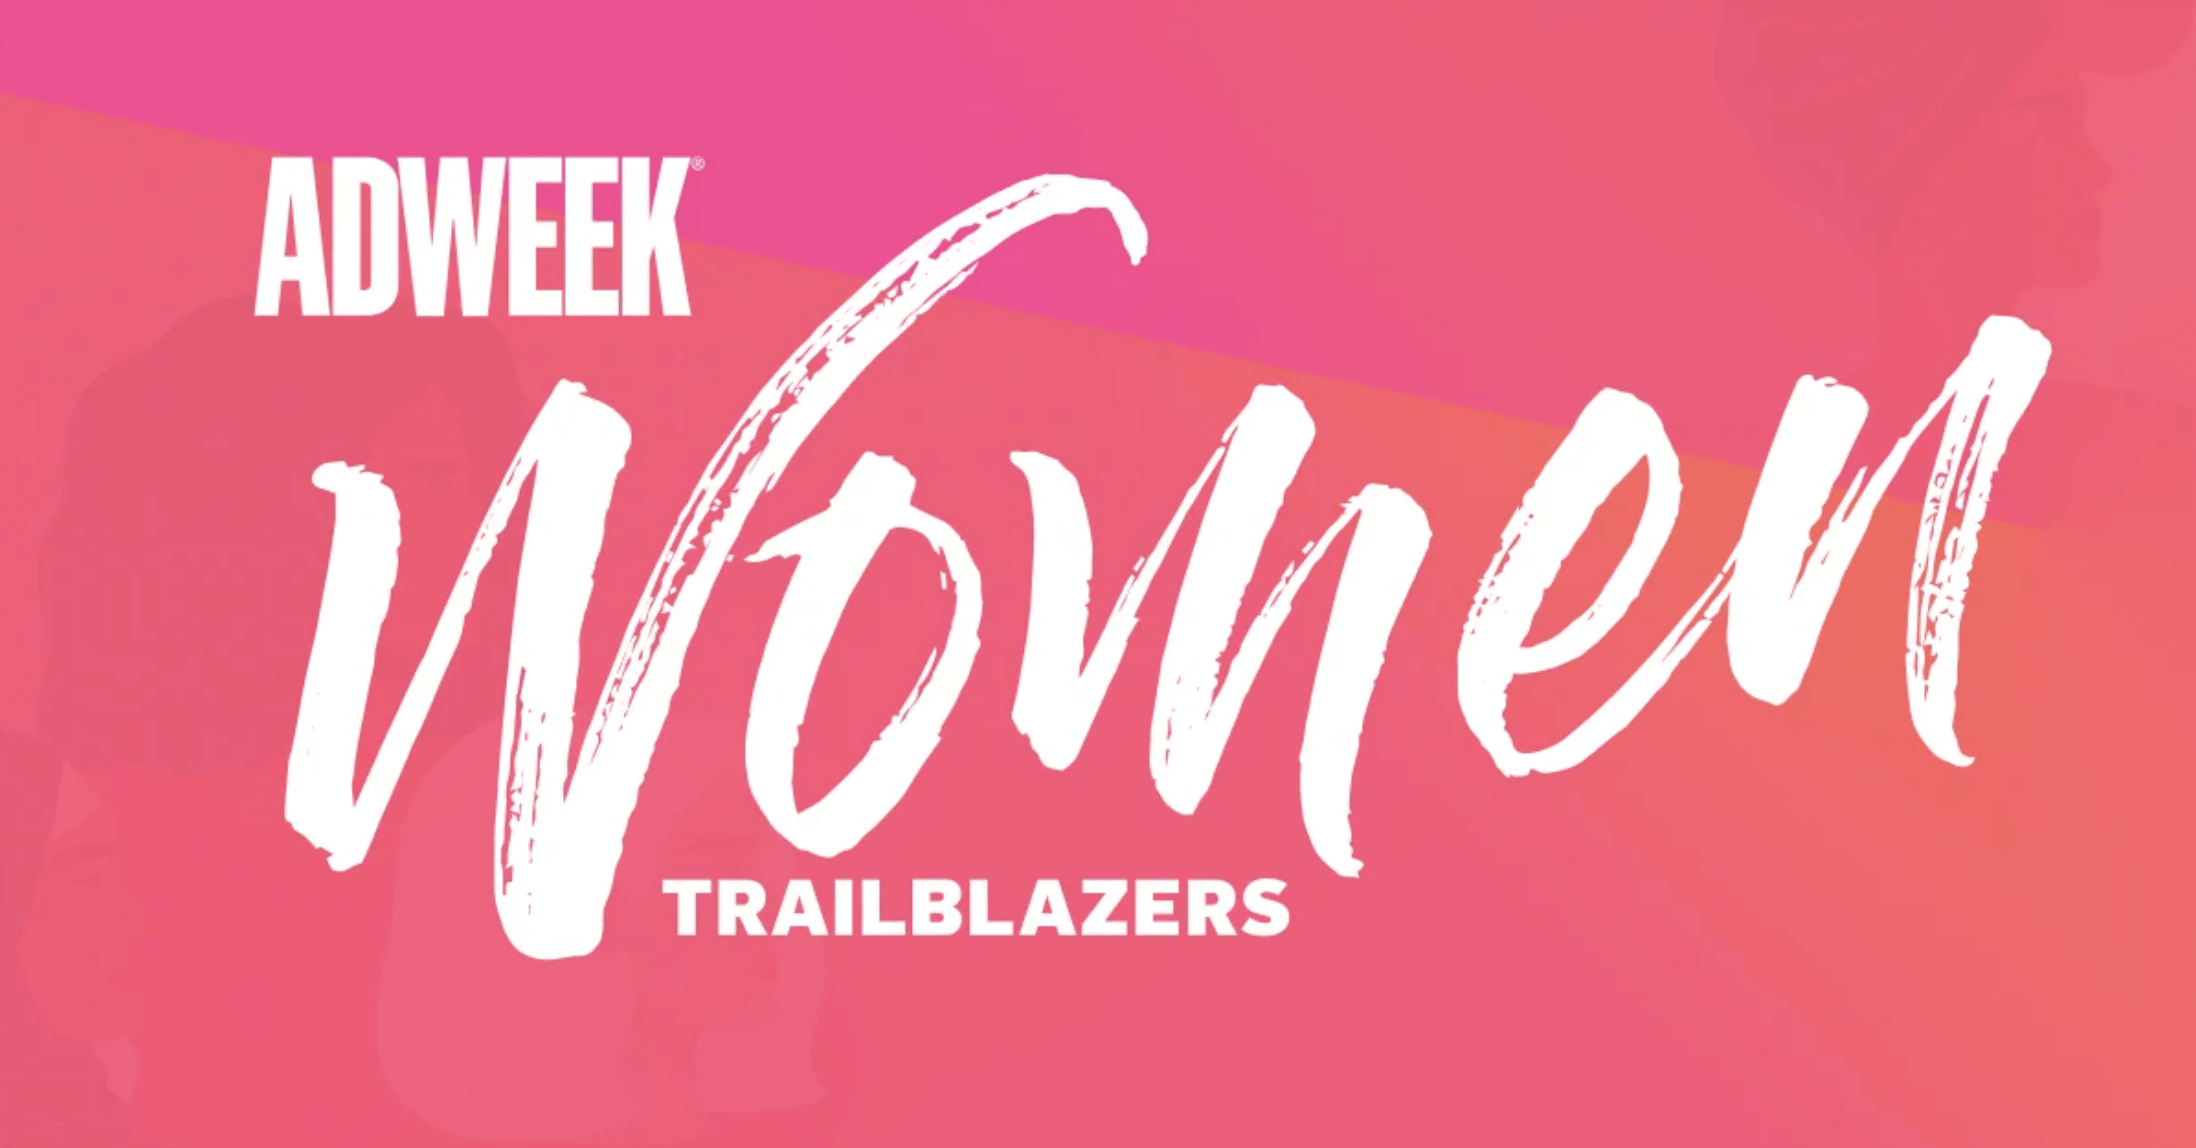 Adweek's Women Trailblazers